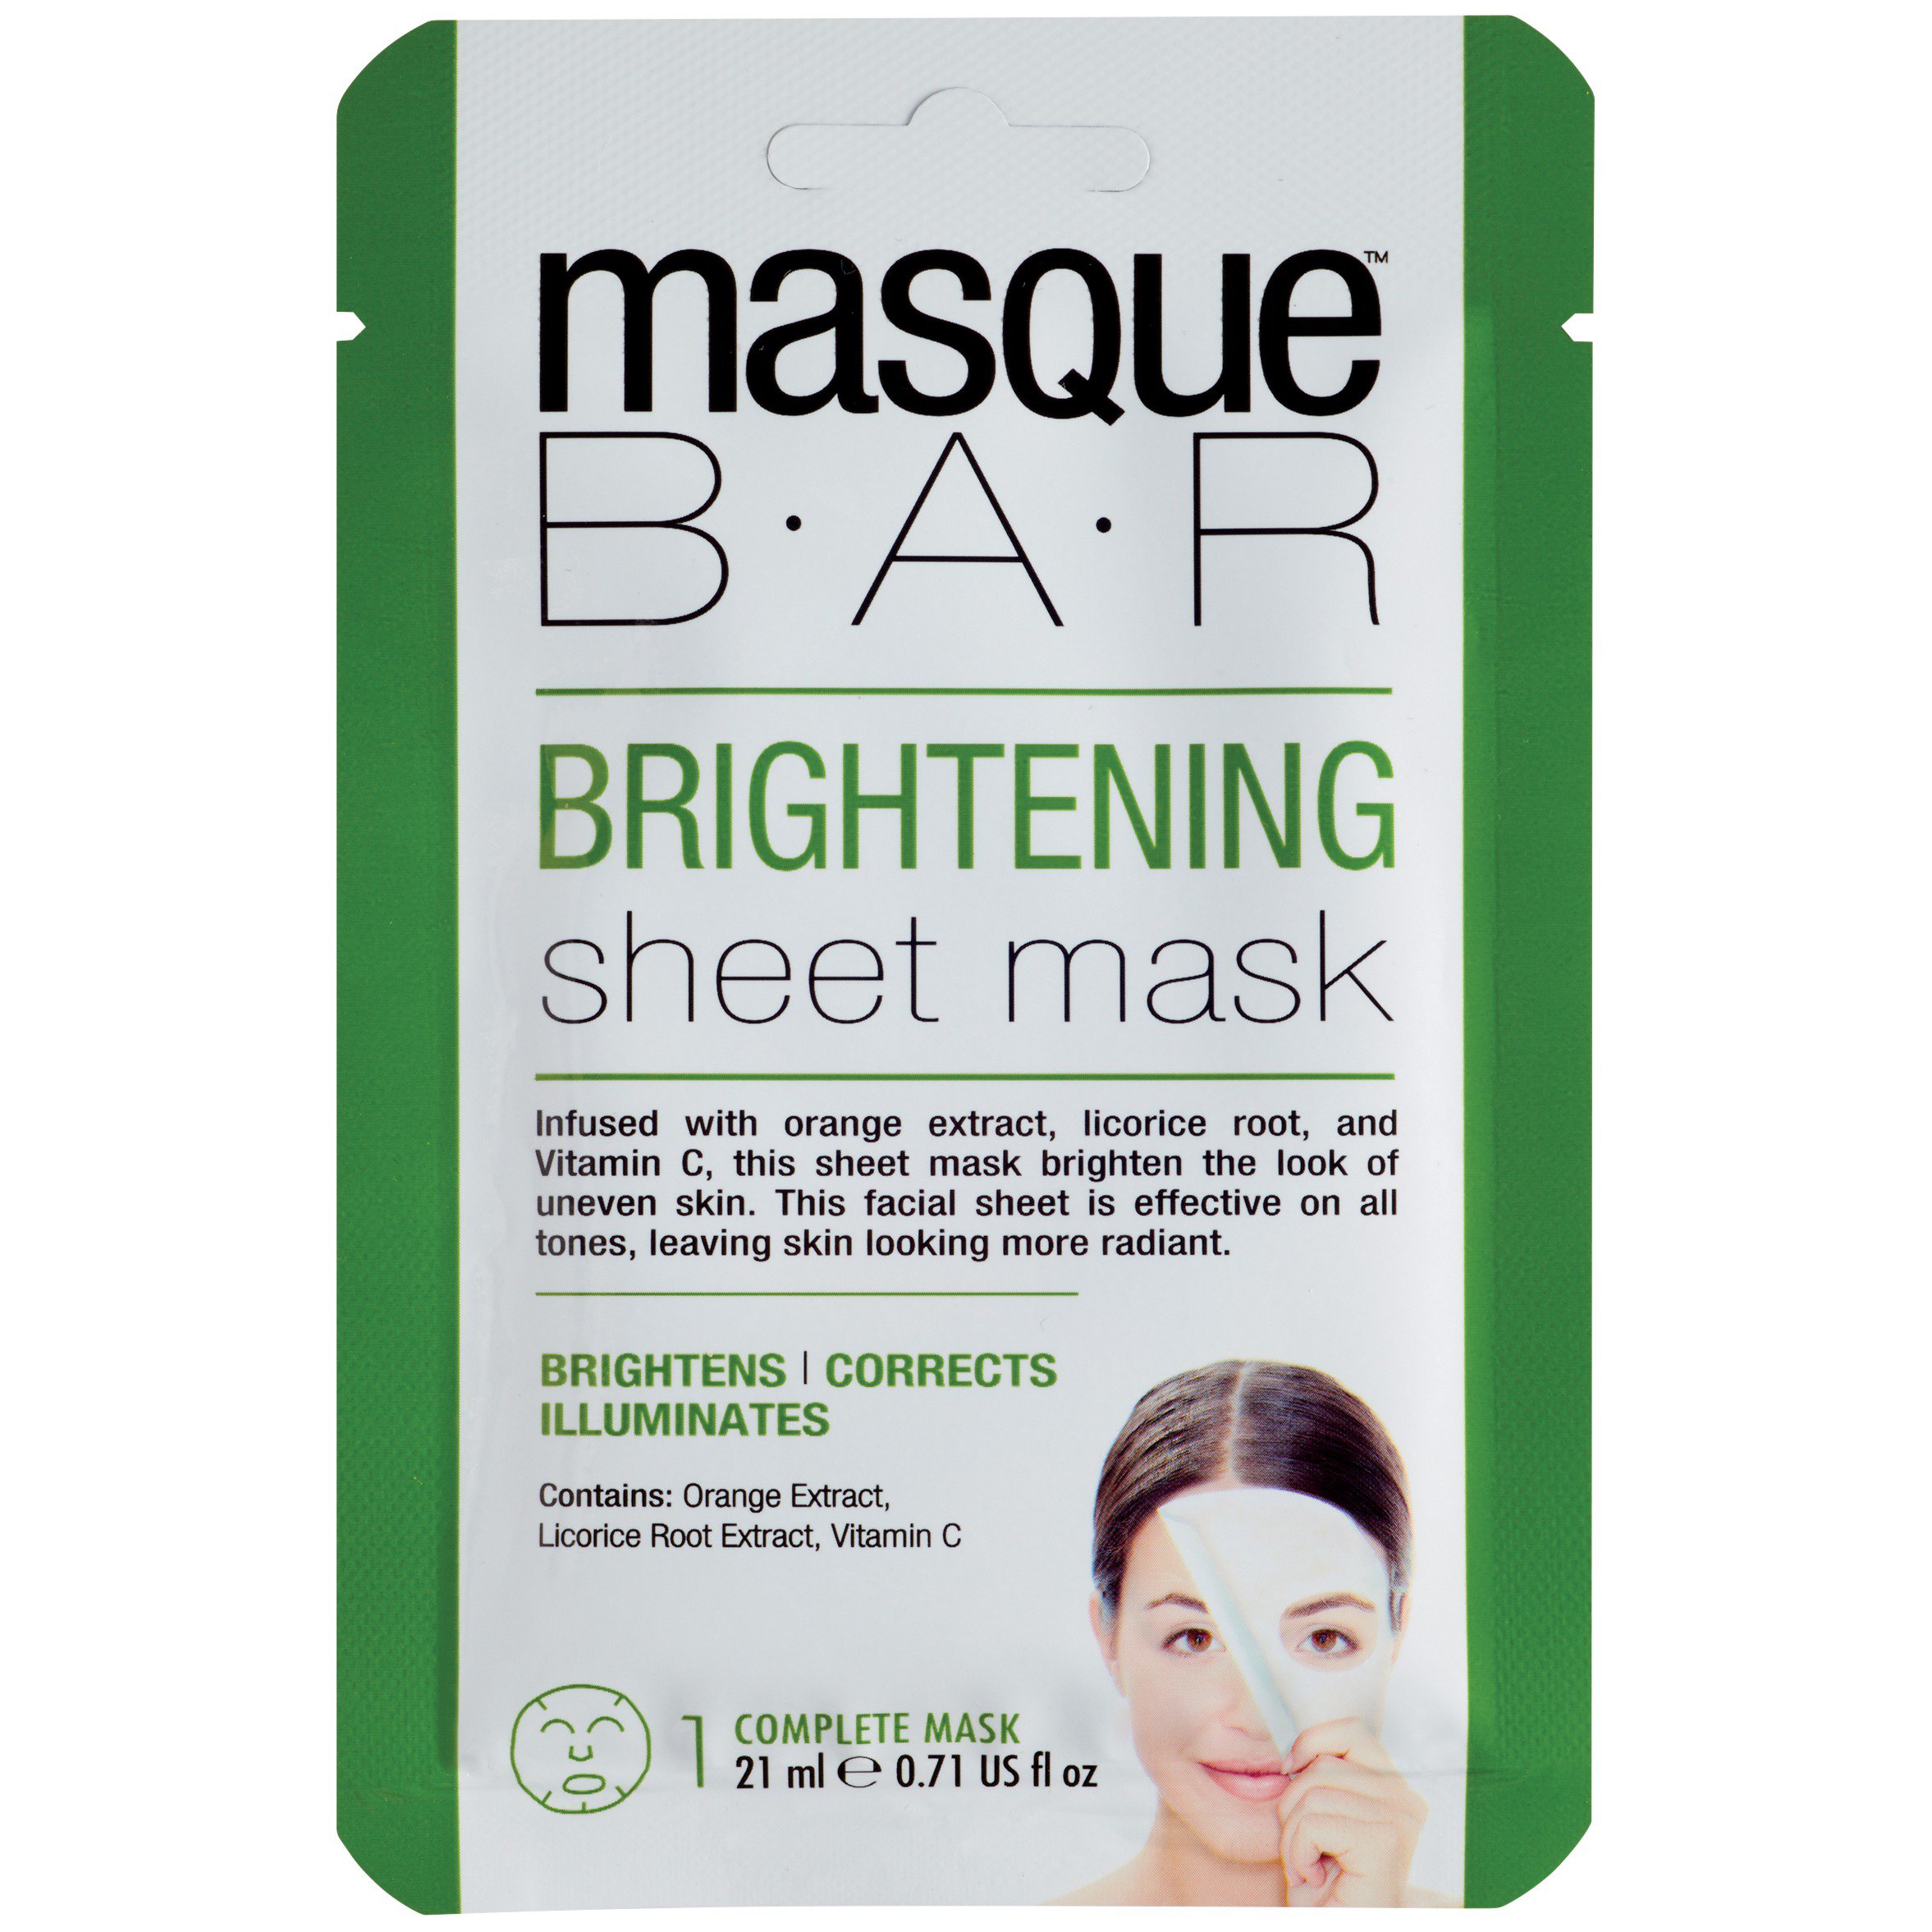 Masque Bar Brightening Sheet Mask - Shop Facial Masks & Treatments at H-E-B